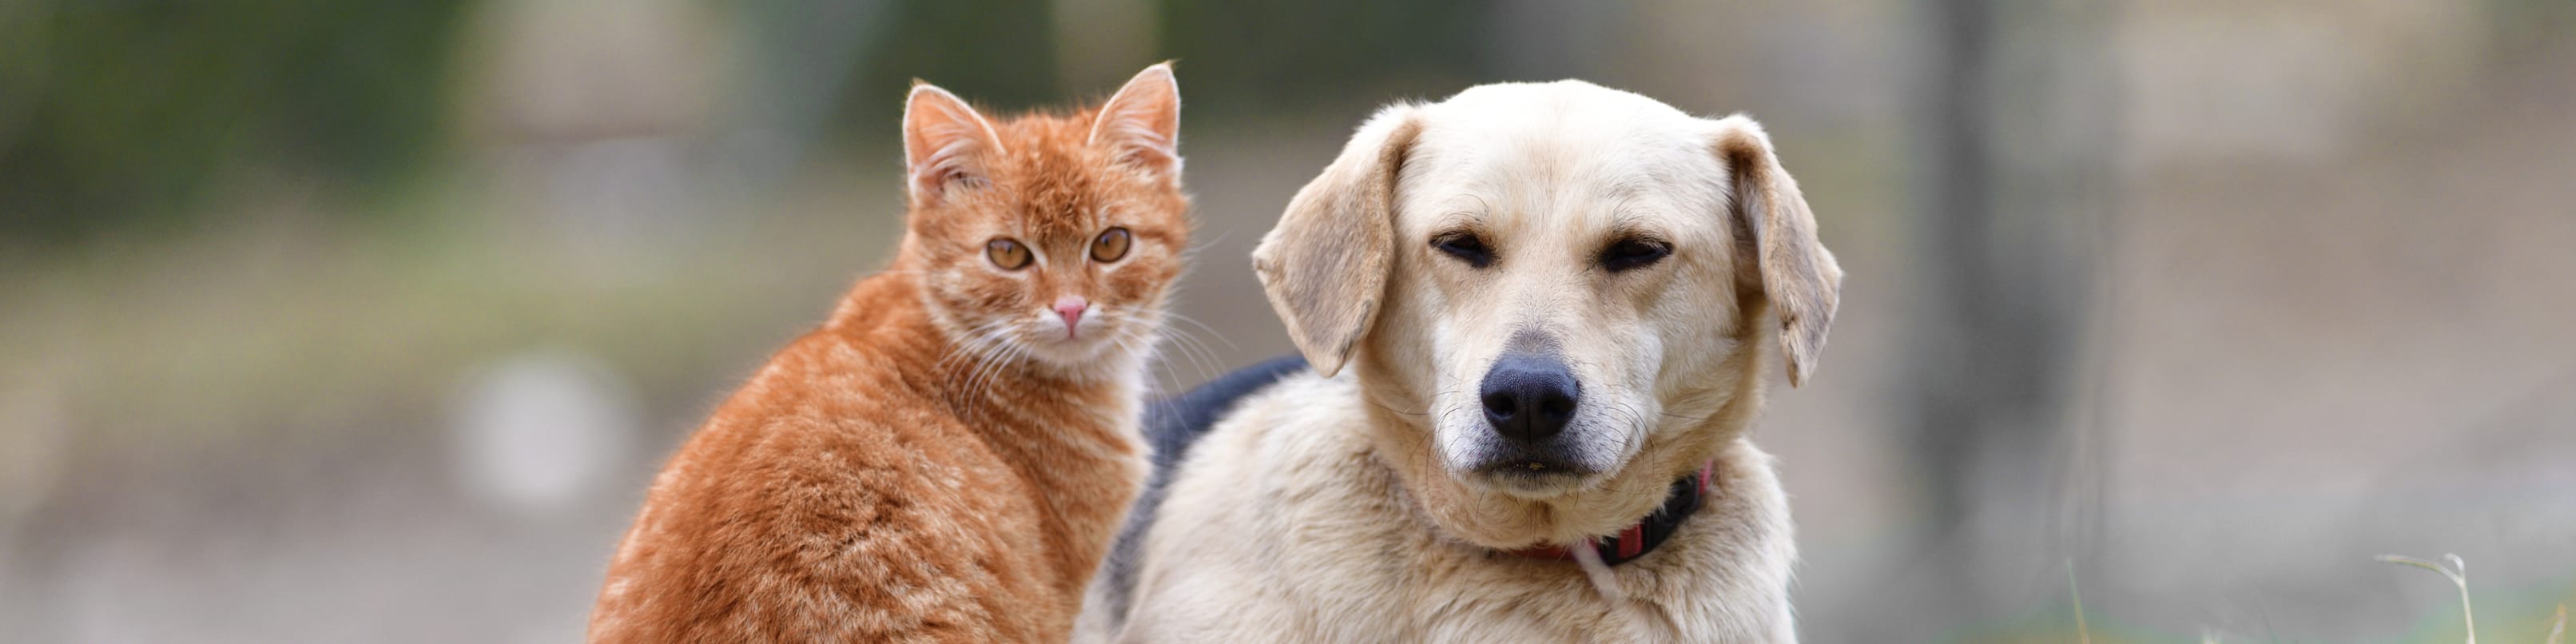 Gatto e cane siedono pacificamente uno accanto all’altro